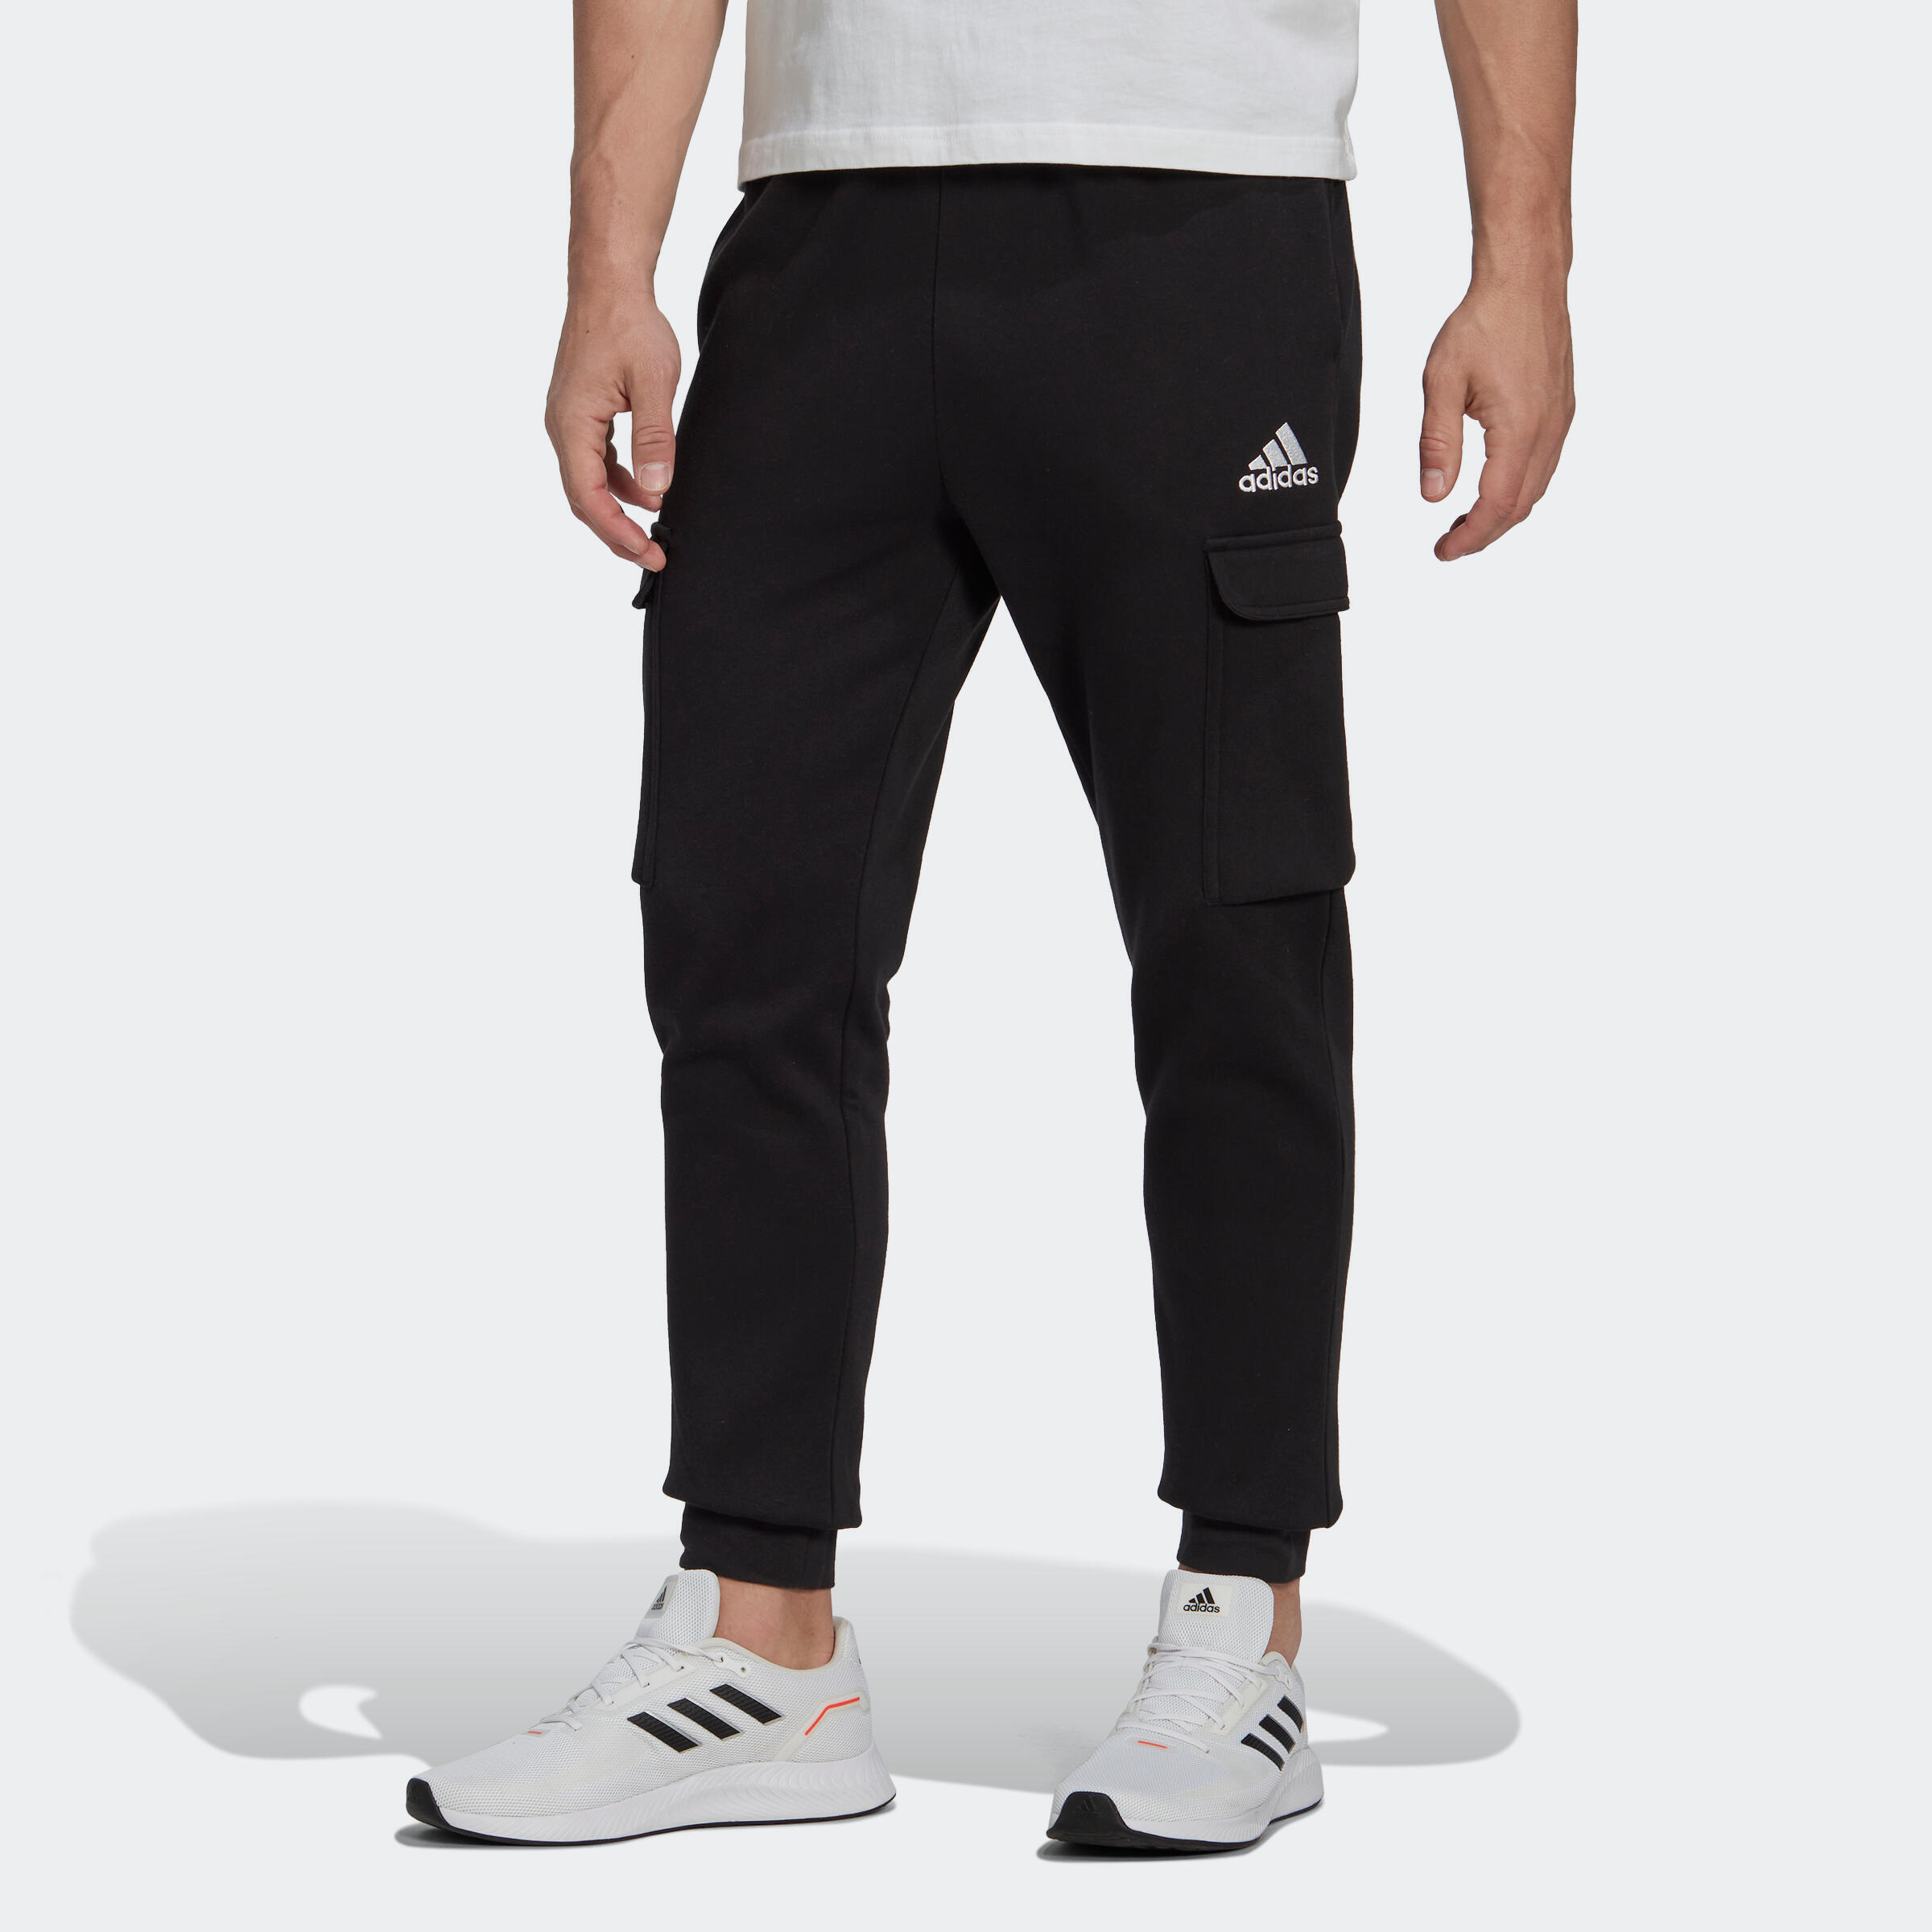 Спортивные штаны Adidas Fitness Soft Training мужские черные – купить повыгодным ценам с доставкой из-за рубежа через сервис «CDEK.Shopping»